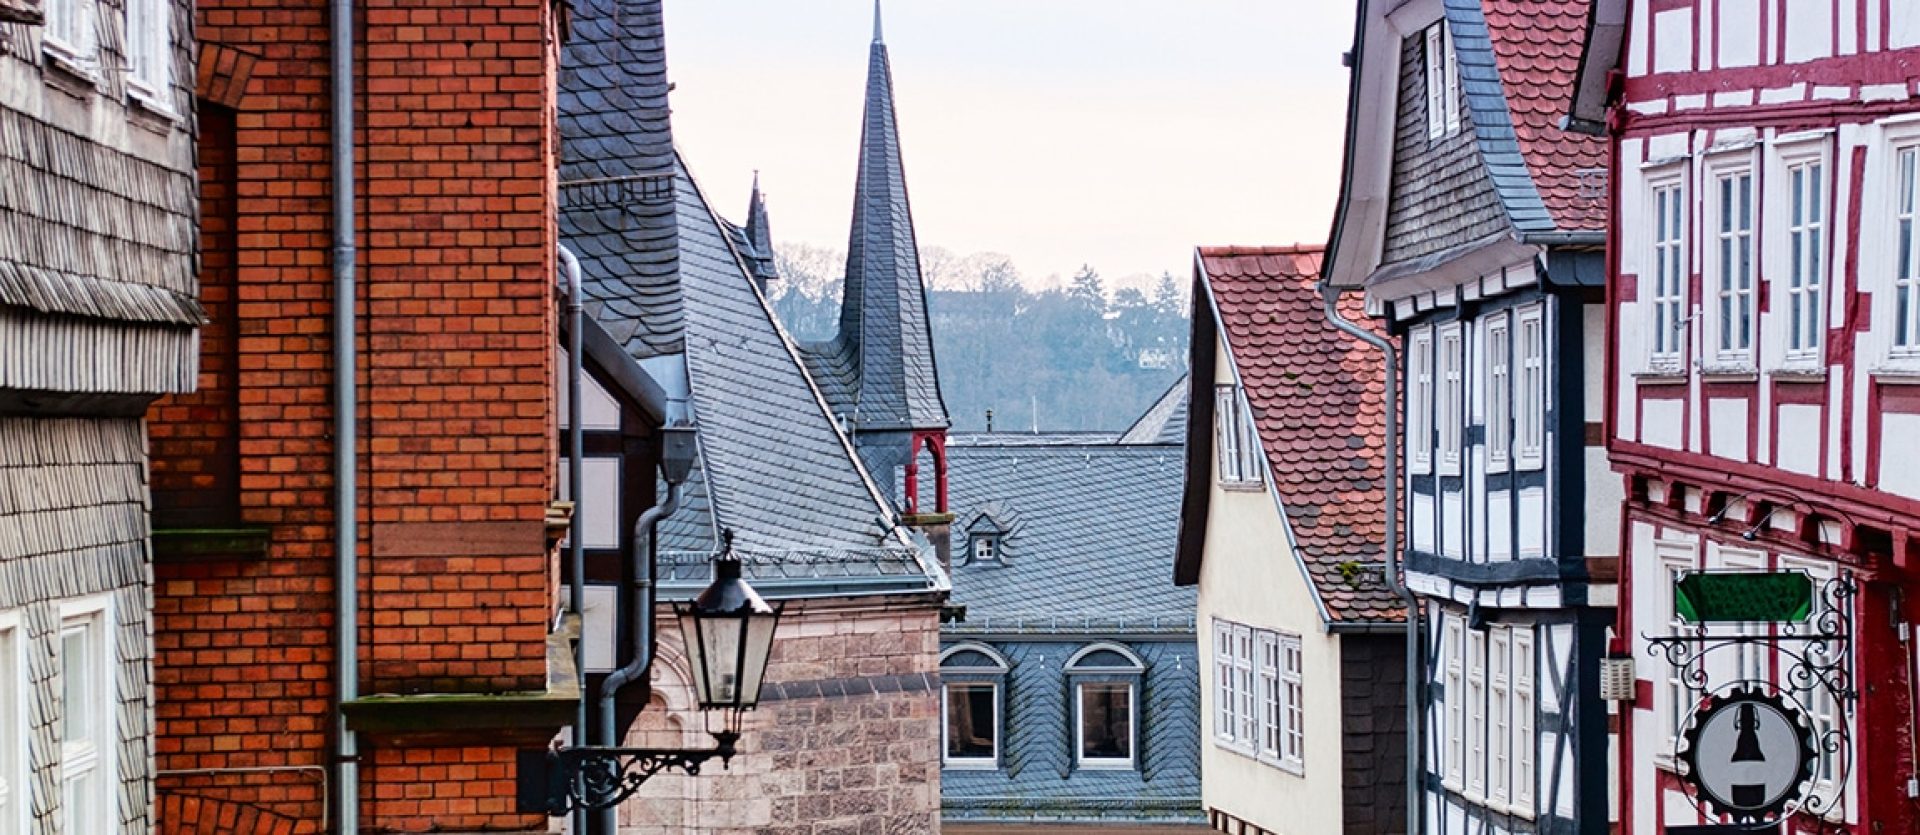 Marburg Old City